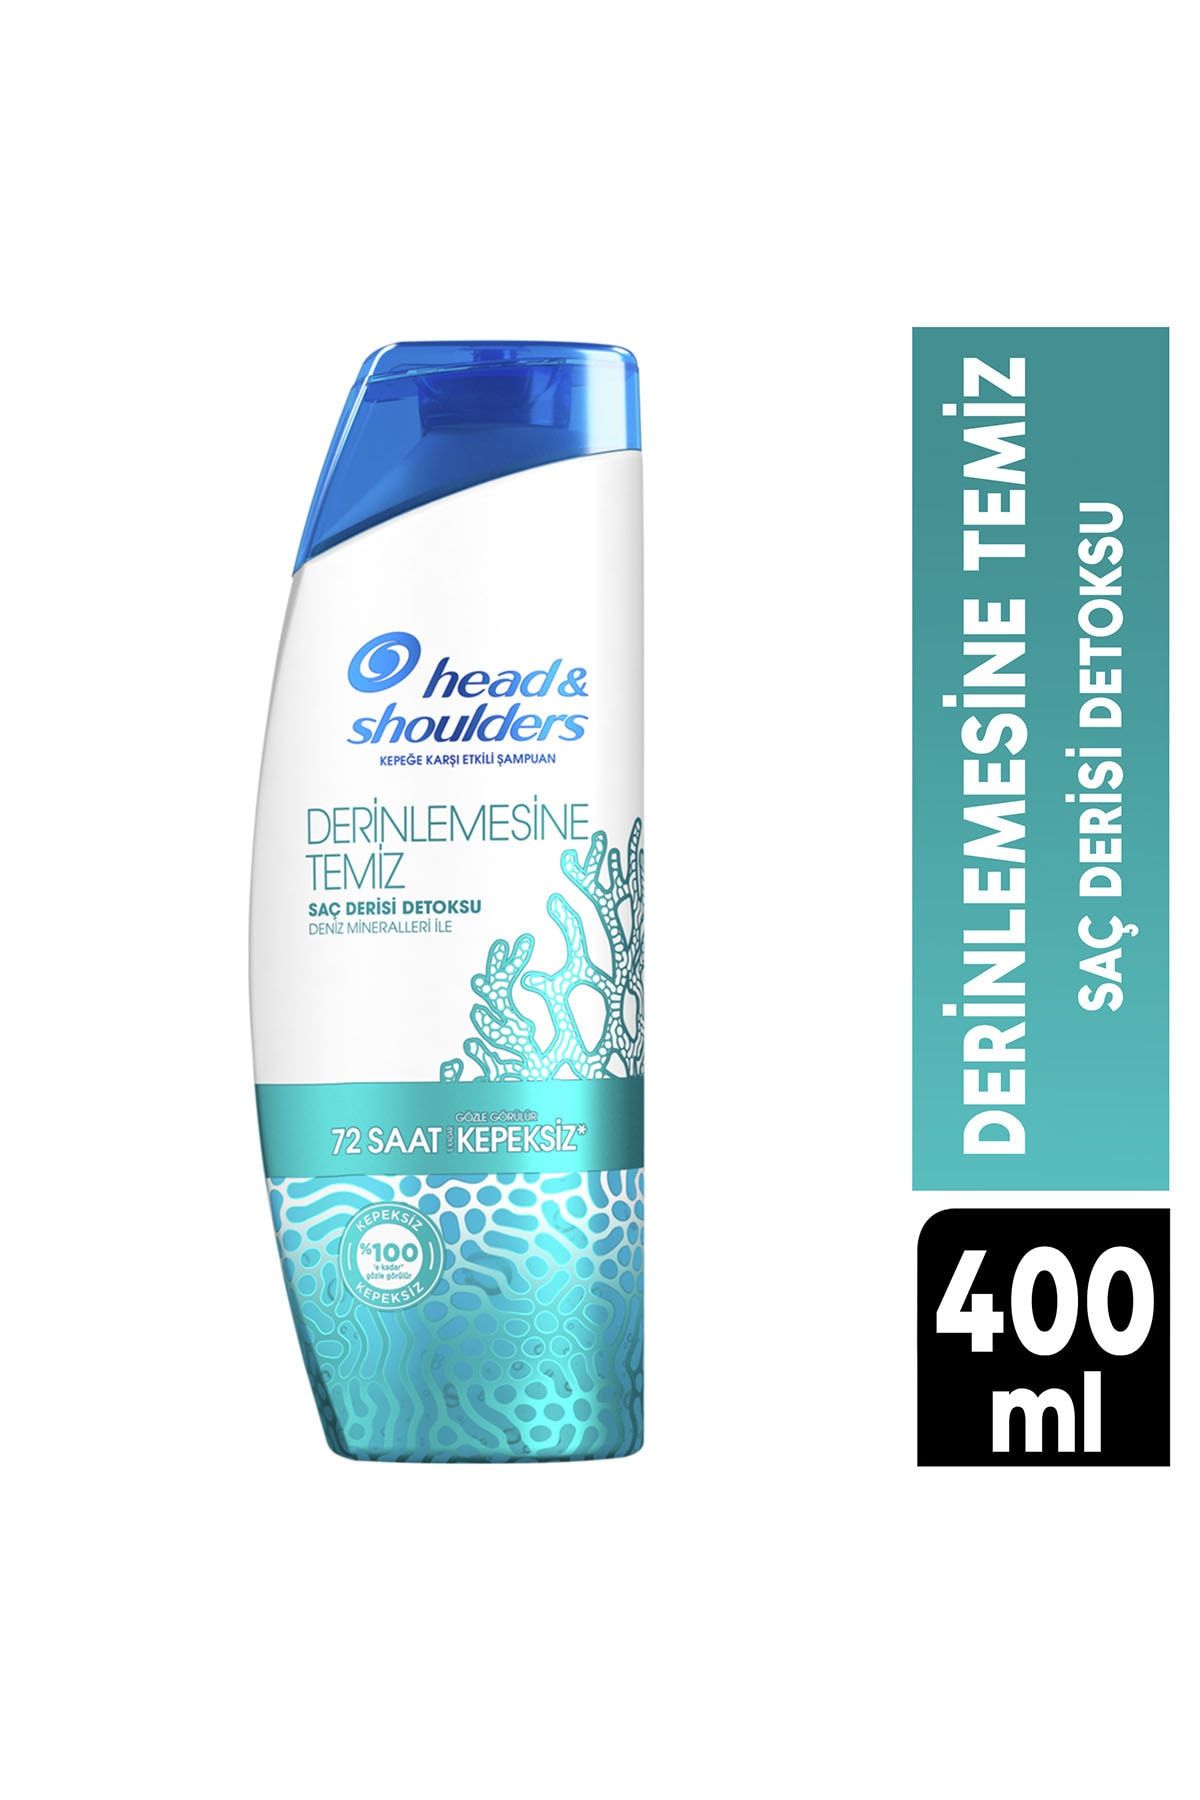 Head And Shoulders Head & Shoulders Derinlemesine Temiz Detoks Şampuan 400 ml